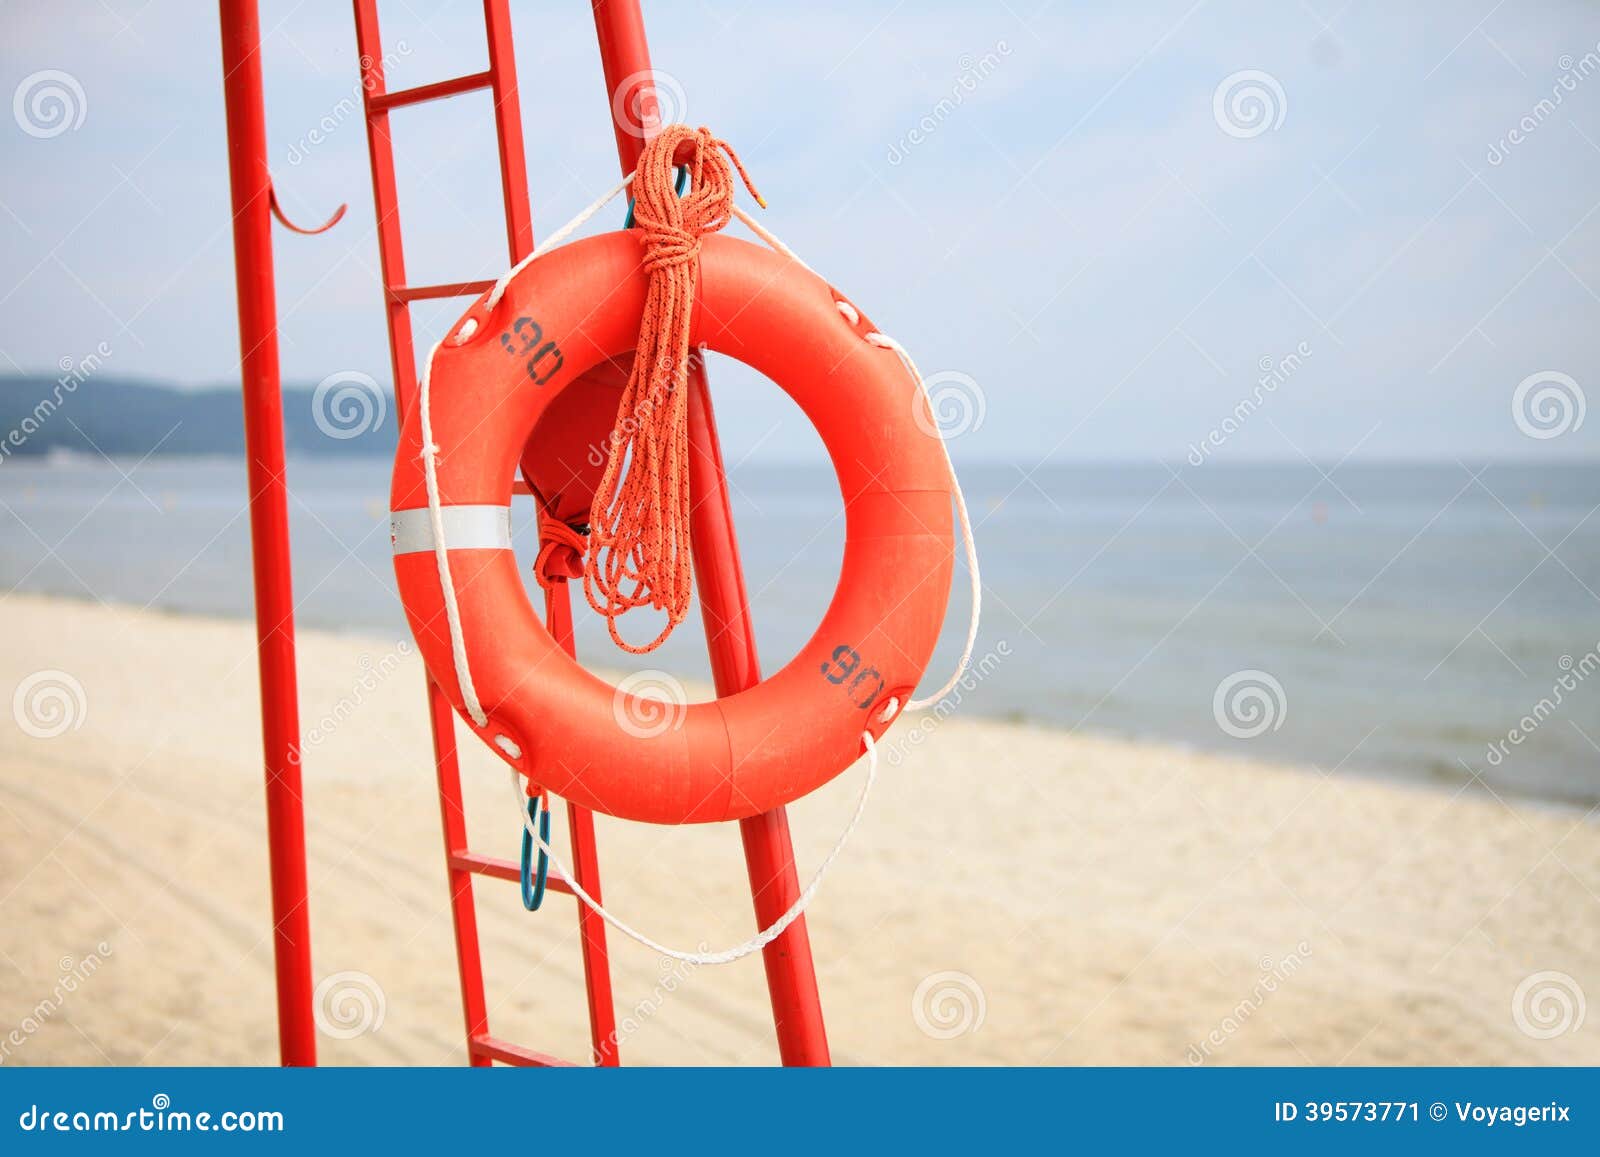 Став спасательный круг. Пляжный спасатель. Спасательный инвентарь на пляже. Спасатель на пляже. Спасательный круг.